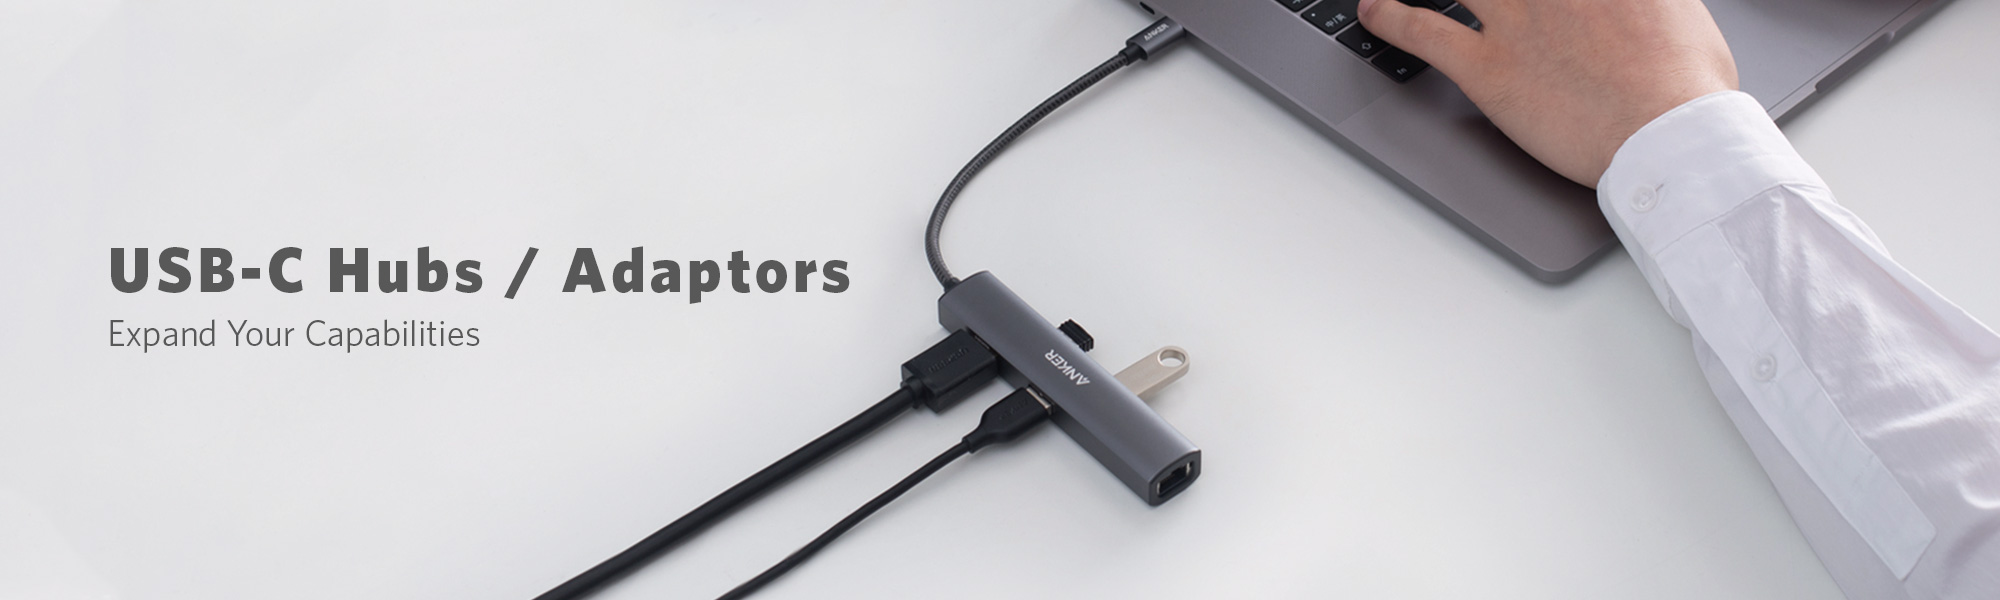 USB-C Hubs / Adaptors